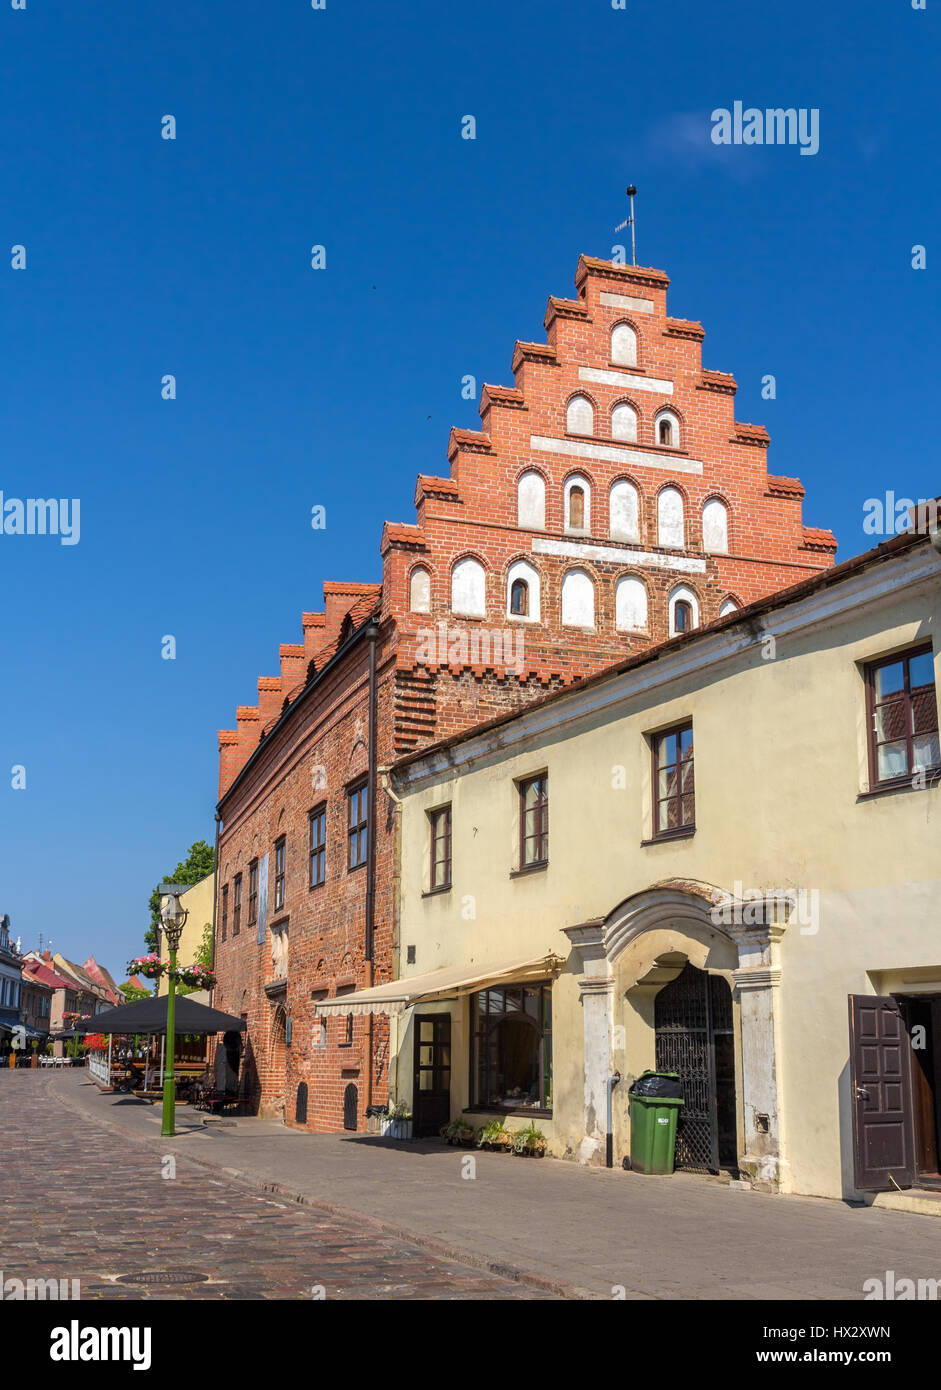 Homes on Vilniaus street in Kaunas, Lithuania Stock Photo